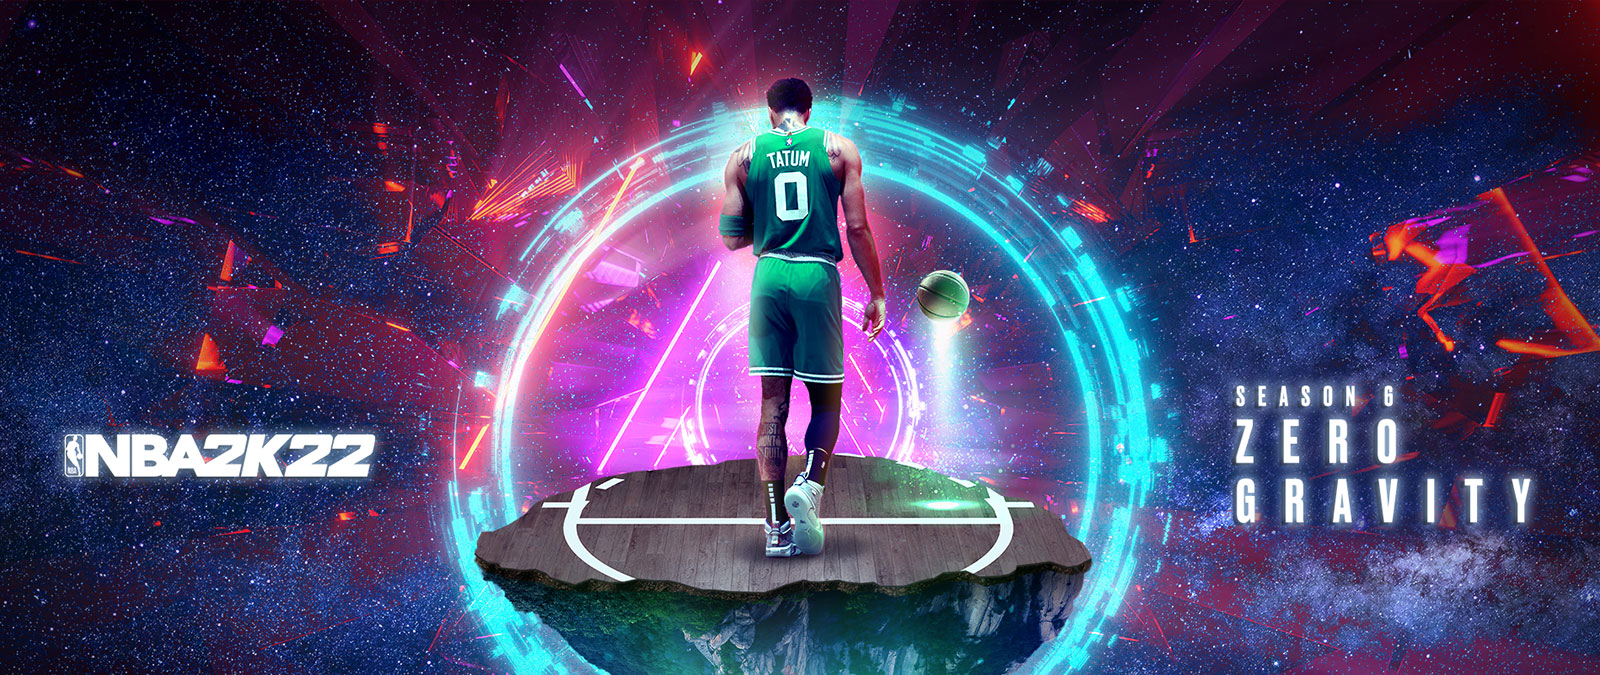 NBA 2K22, Season 6 Zero Gravity, Tatum står på en flytende bit av en basketballbane i rommet omgitt av ringer med energi.